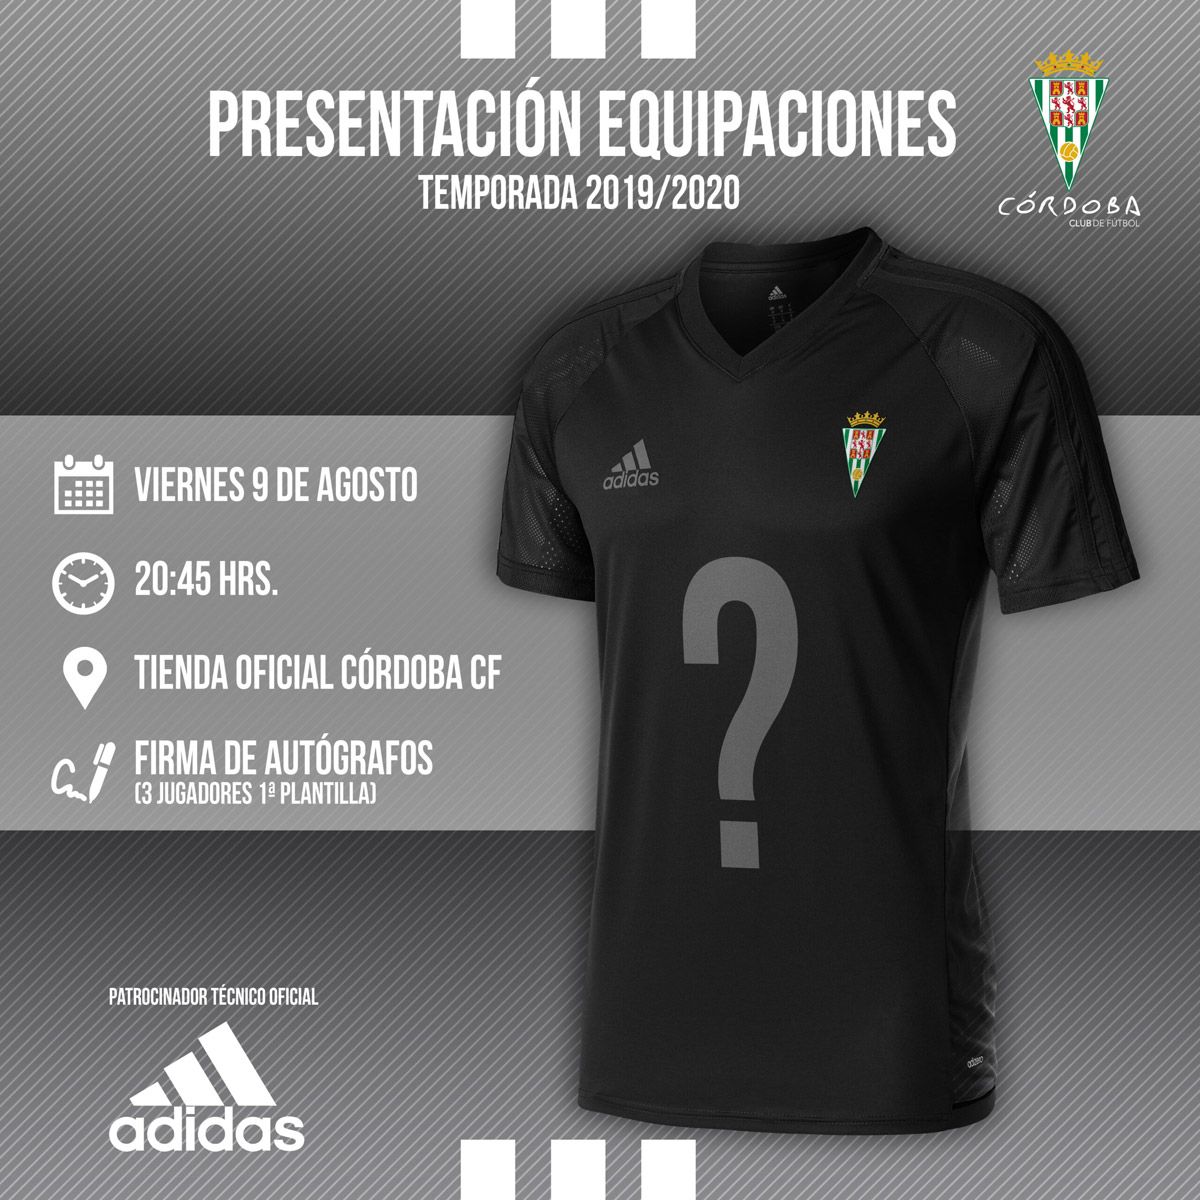 Presentación de equipaciones de Adidas Córdoba CF - Oficial